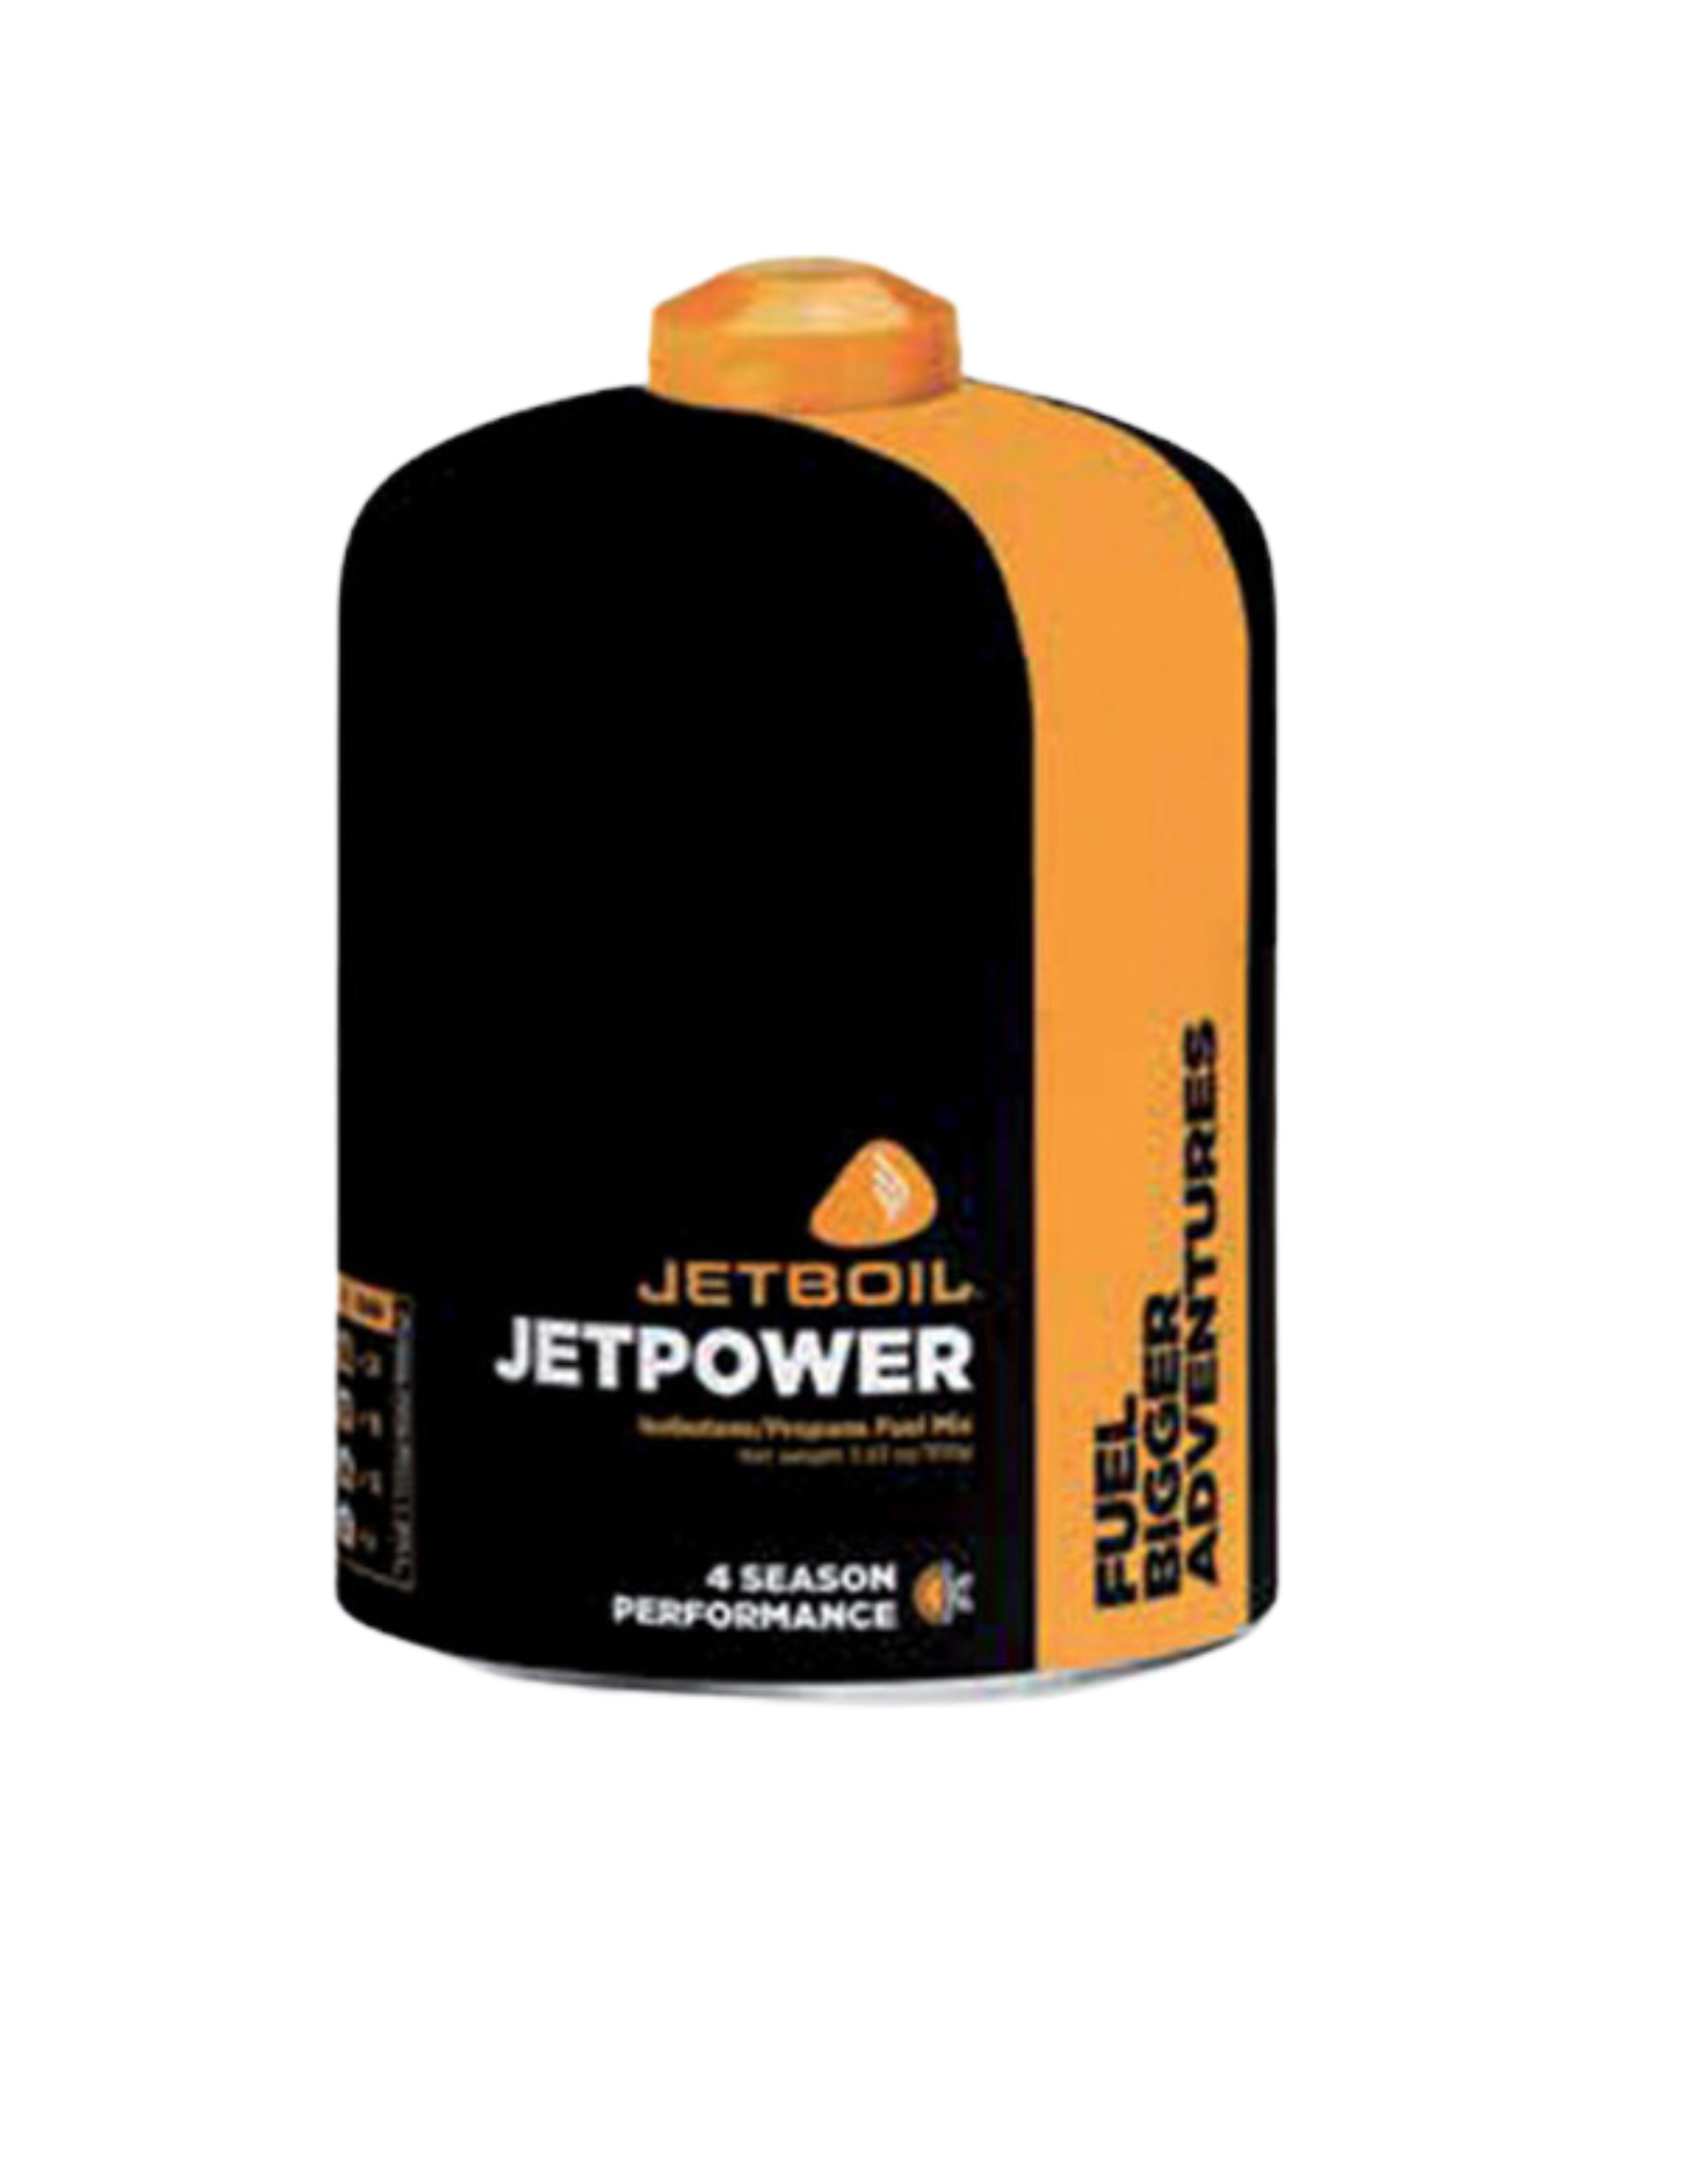 Cartouche de gaz Jetboil Jetpower 450 G